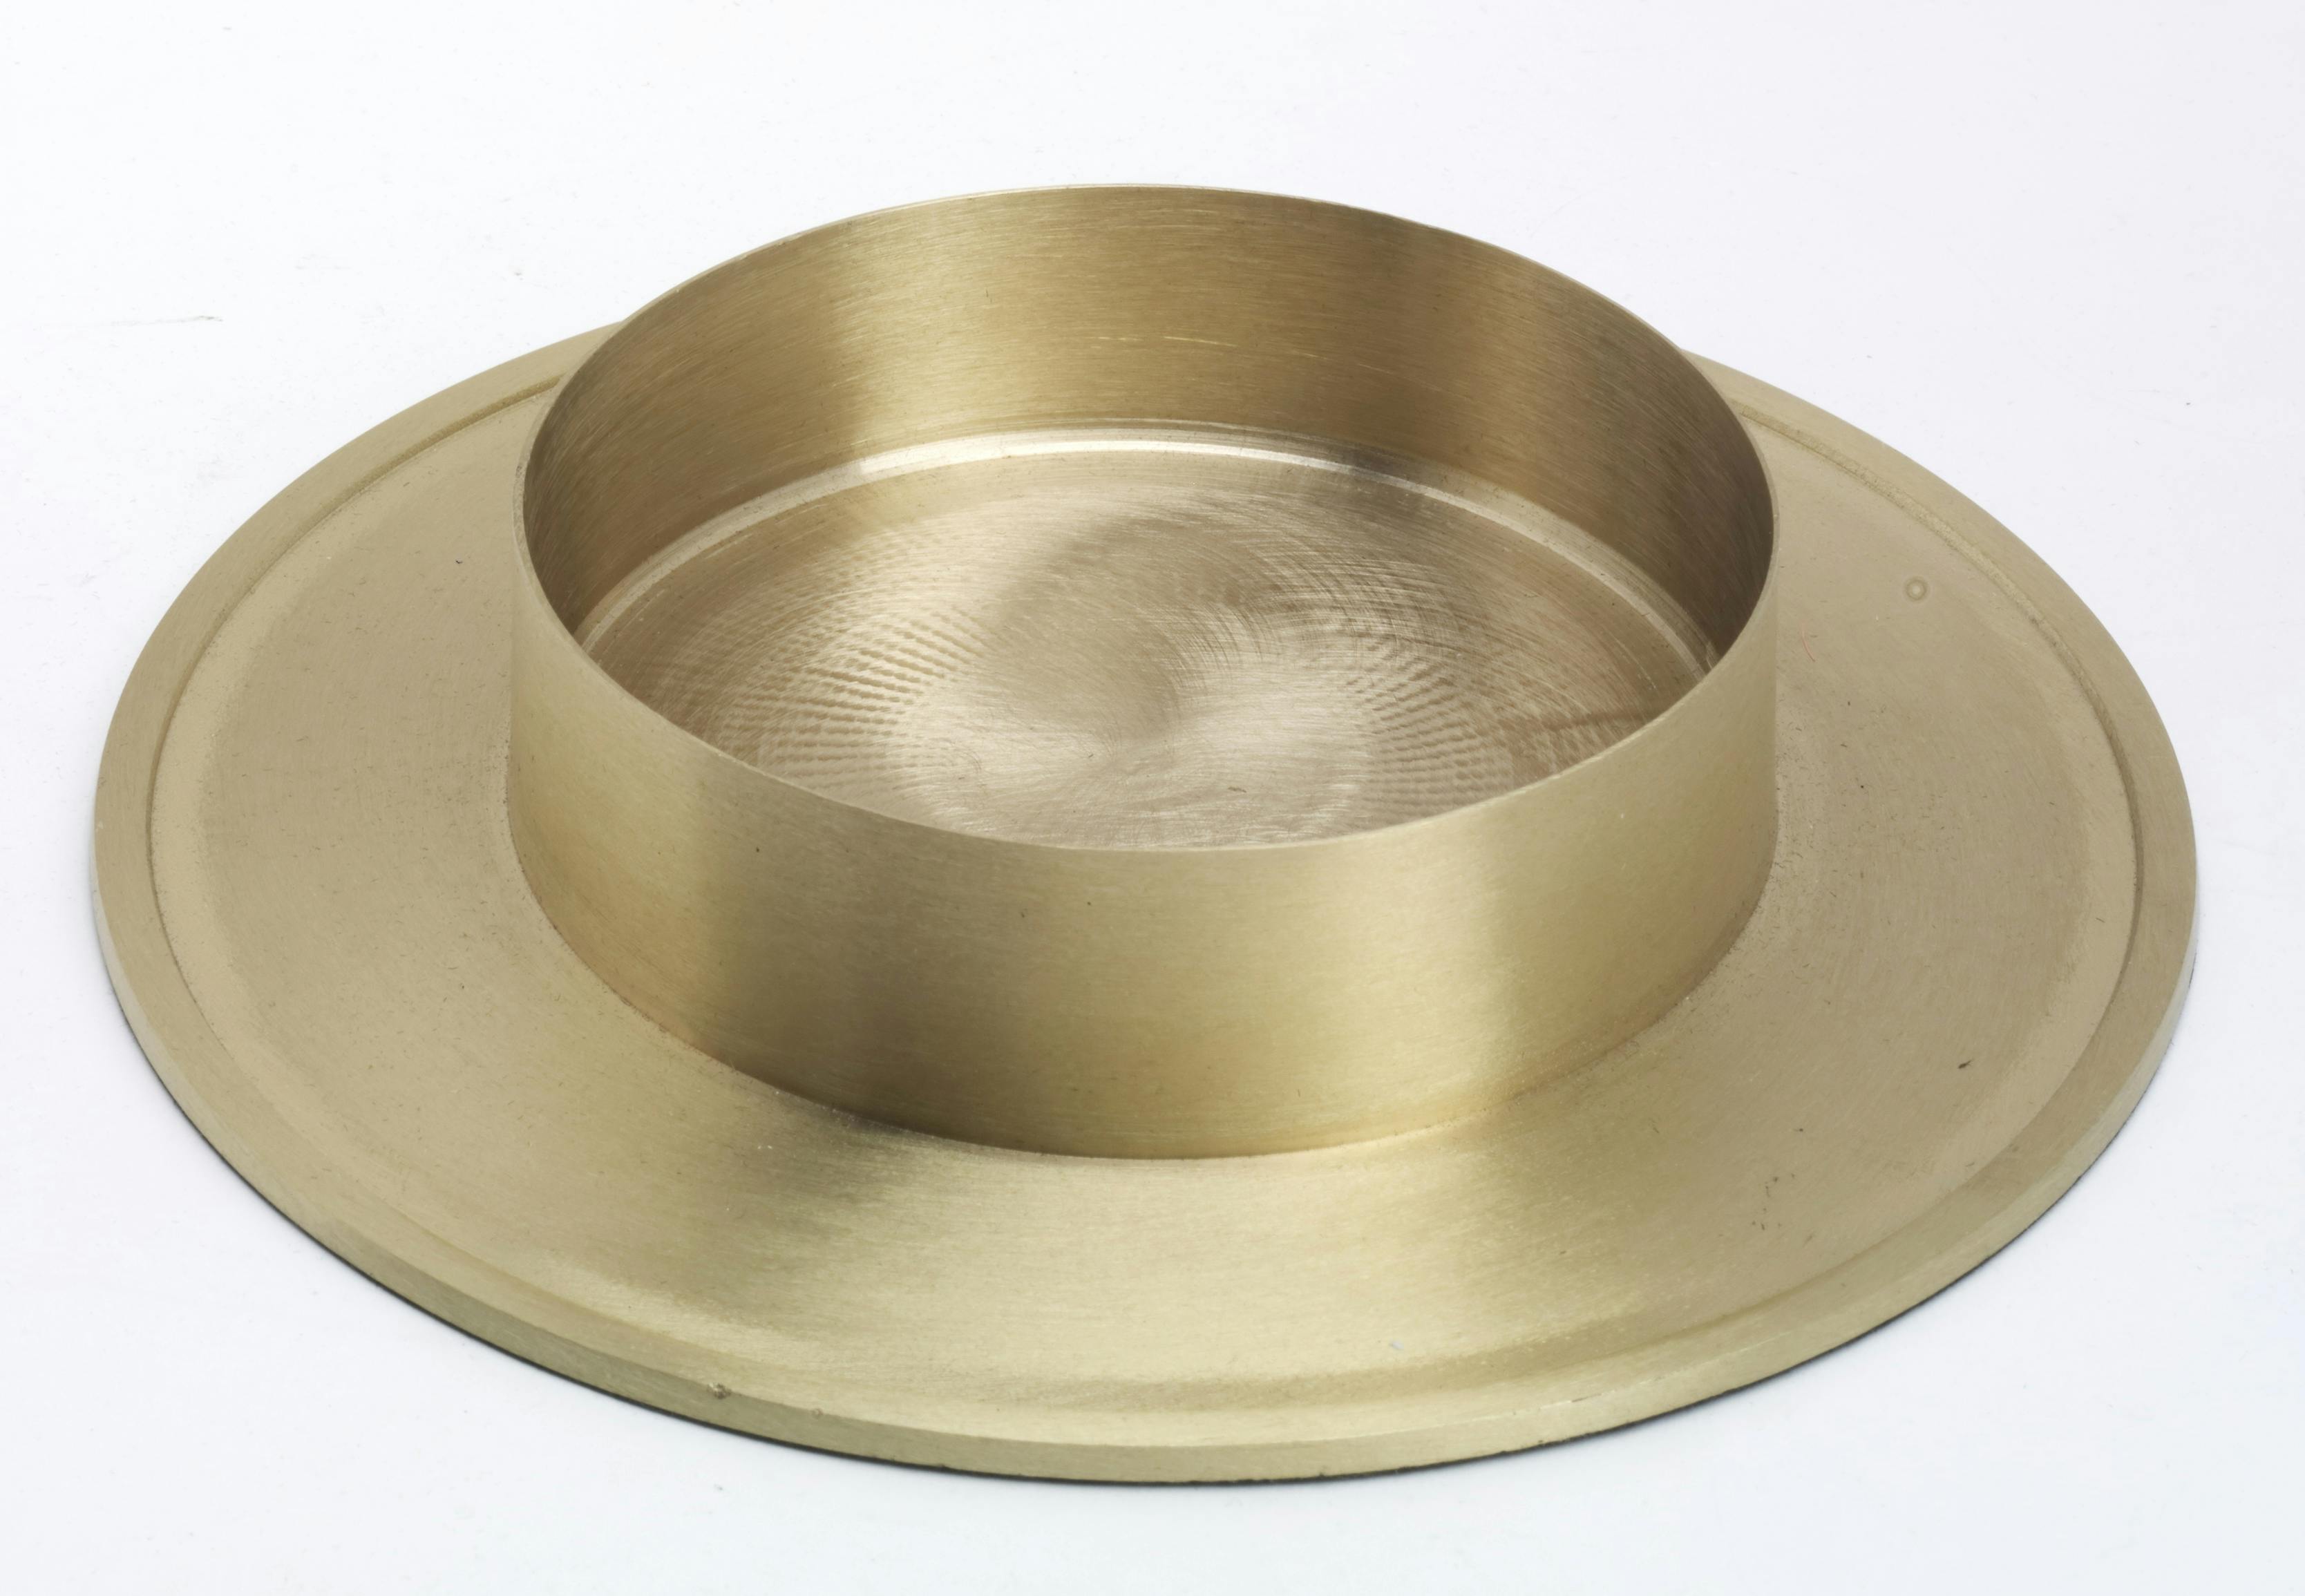 Altarkerzenhalter Durchmesser 60mm in Silber